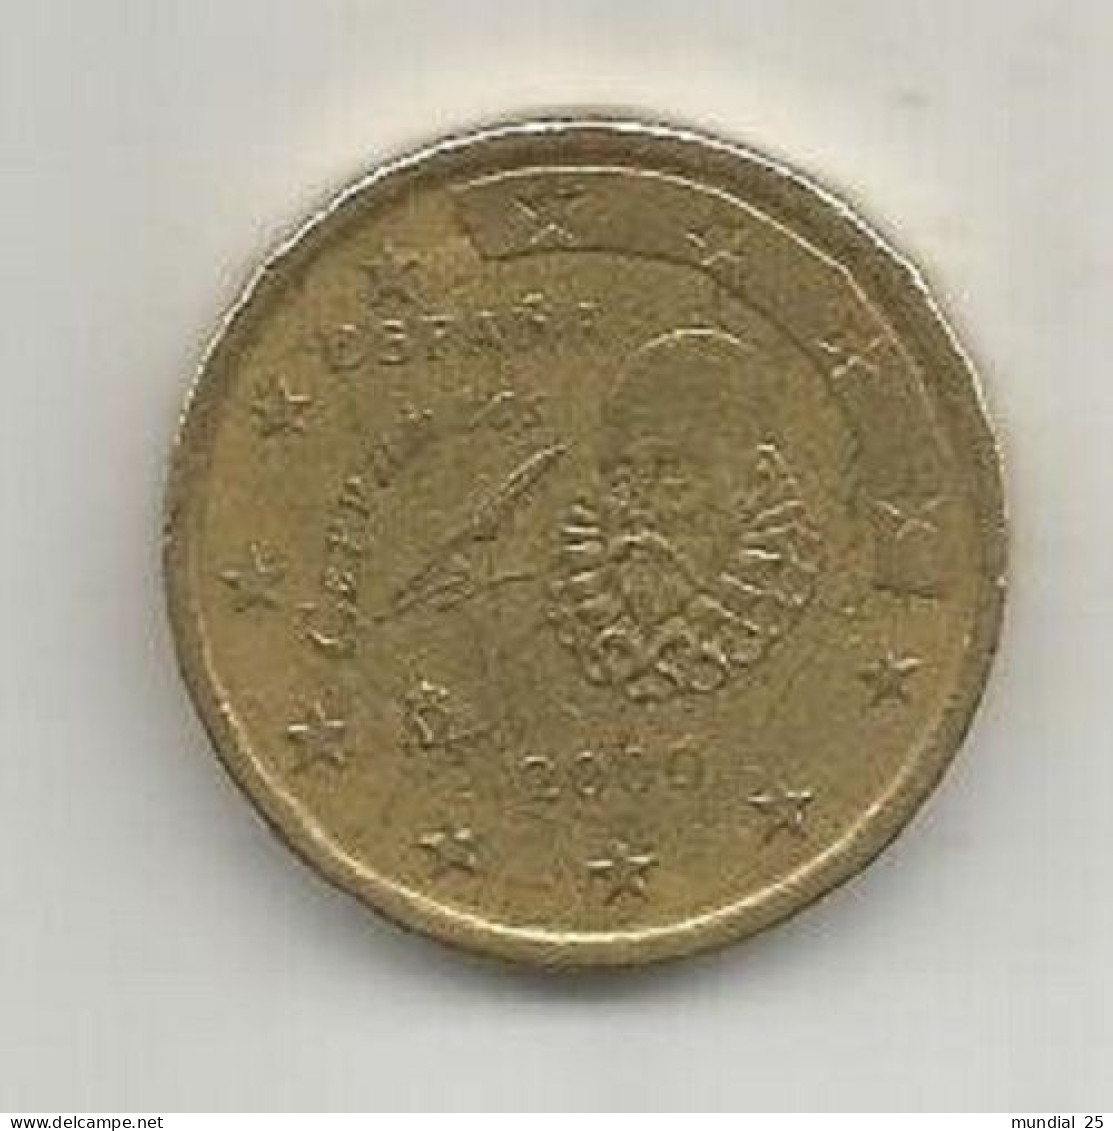 SPAIN 50 EURO CENT 2000 M - España